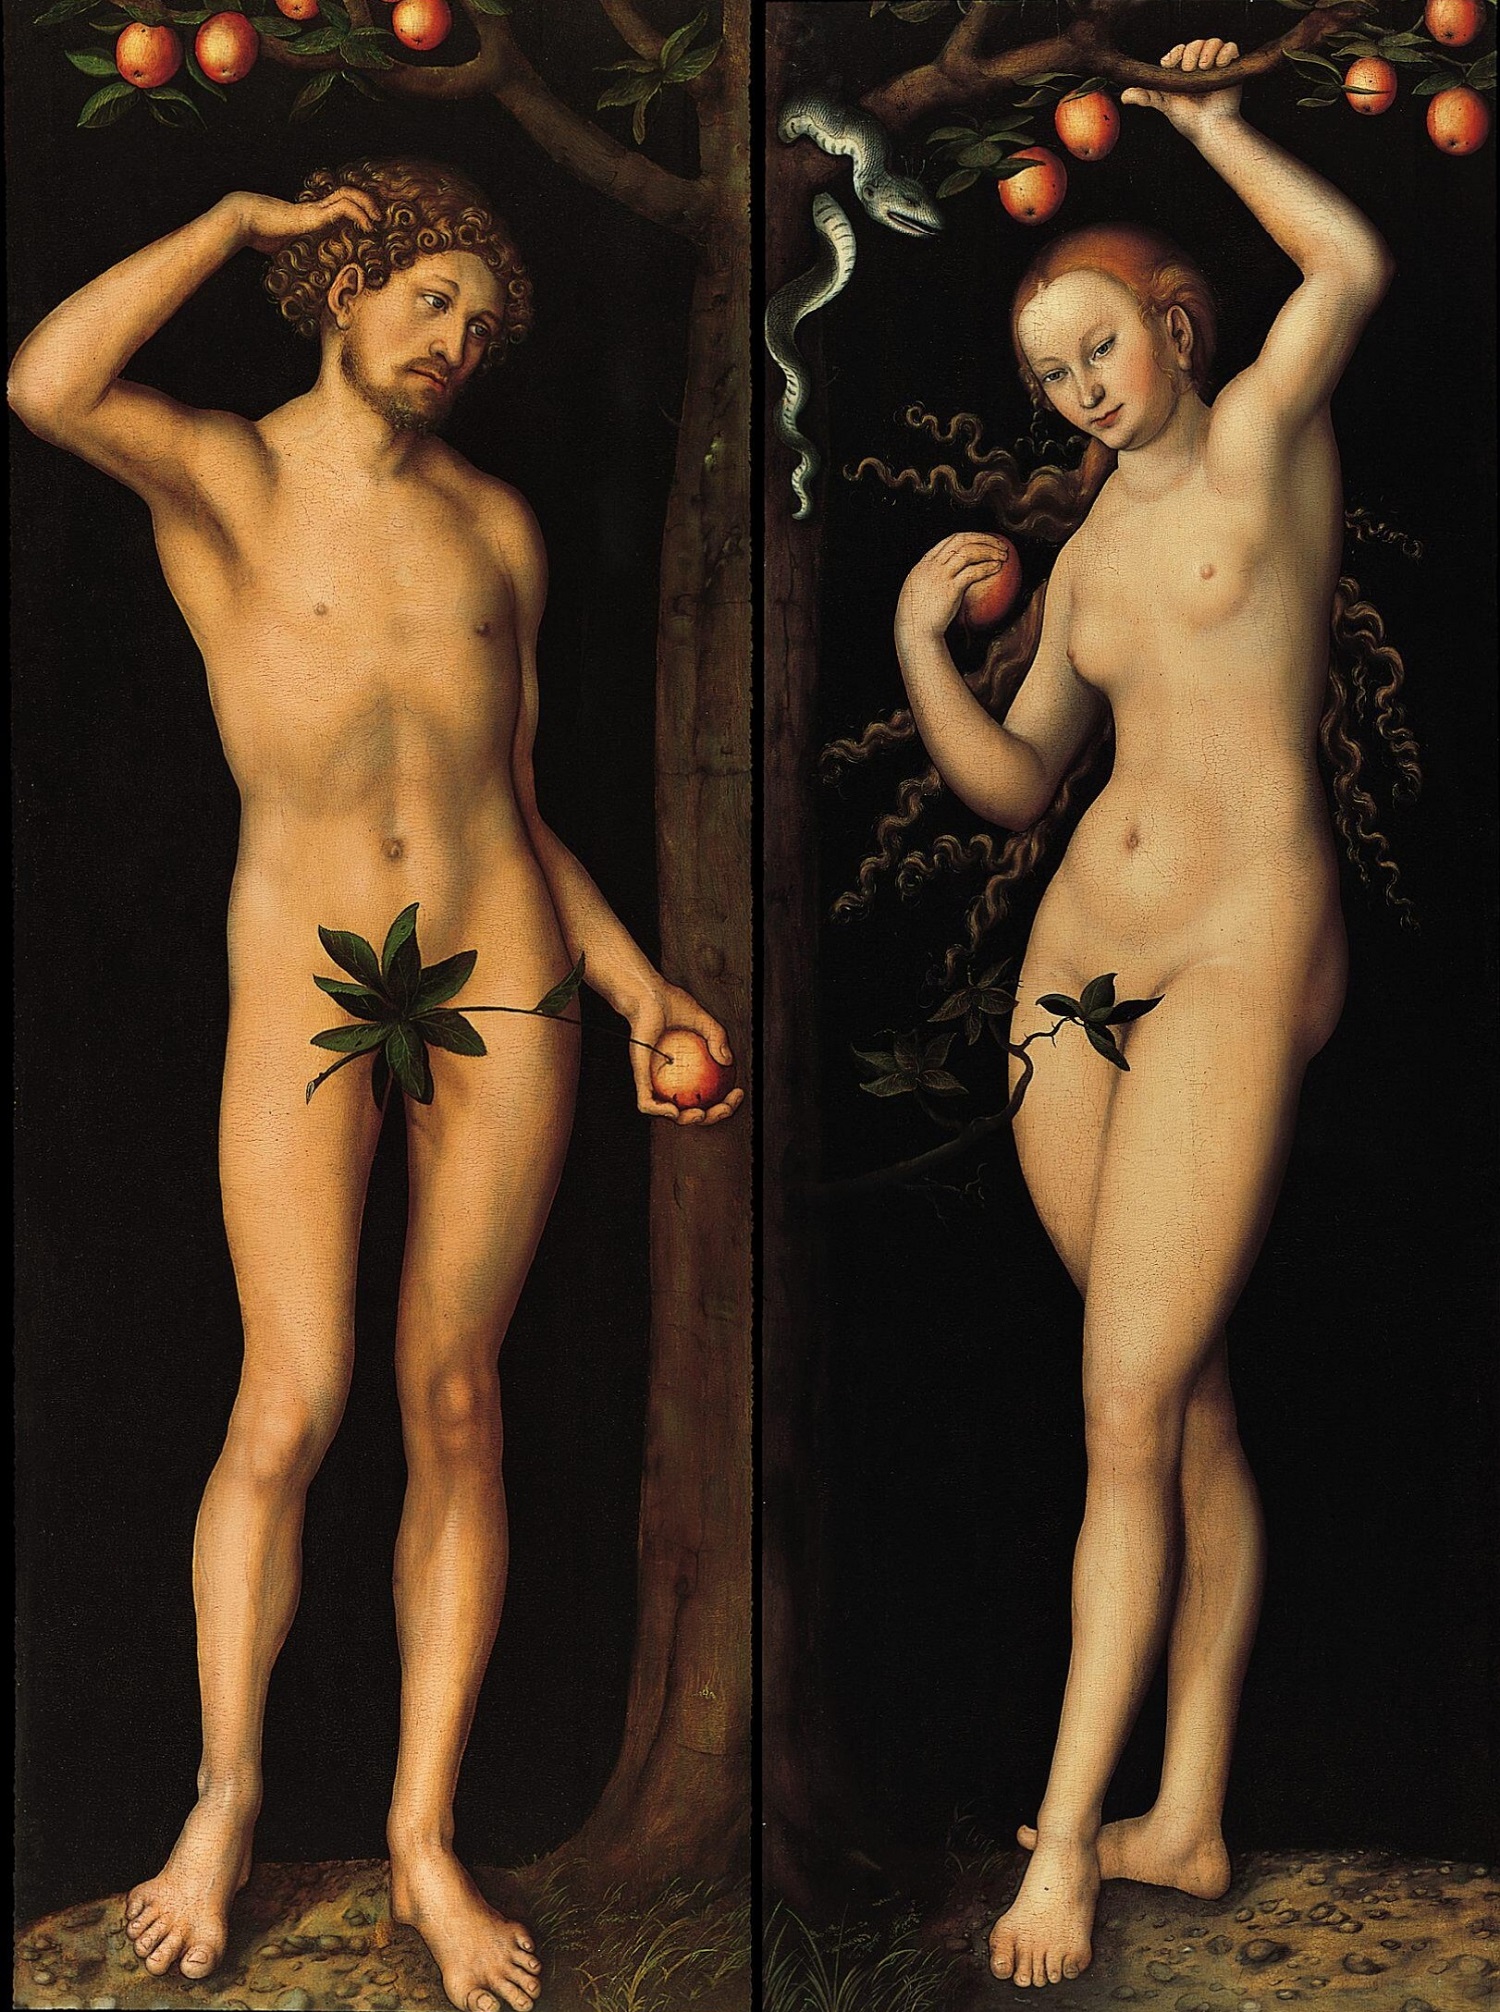 Lucas_Cranach_d.Ä._-_Adam_und_Eva_(Gemäldepaar),_Norton_Simon_Museum